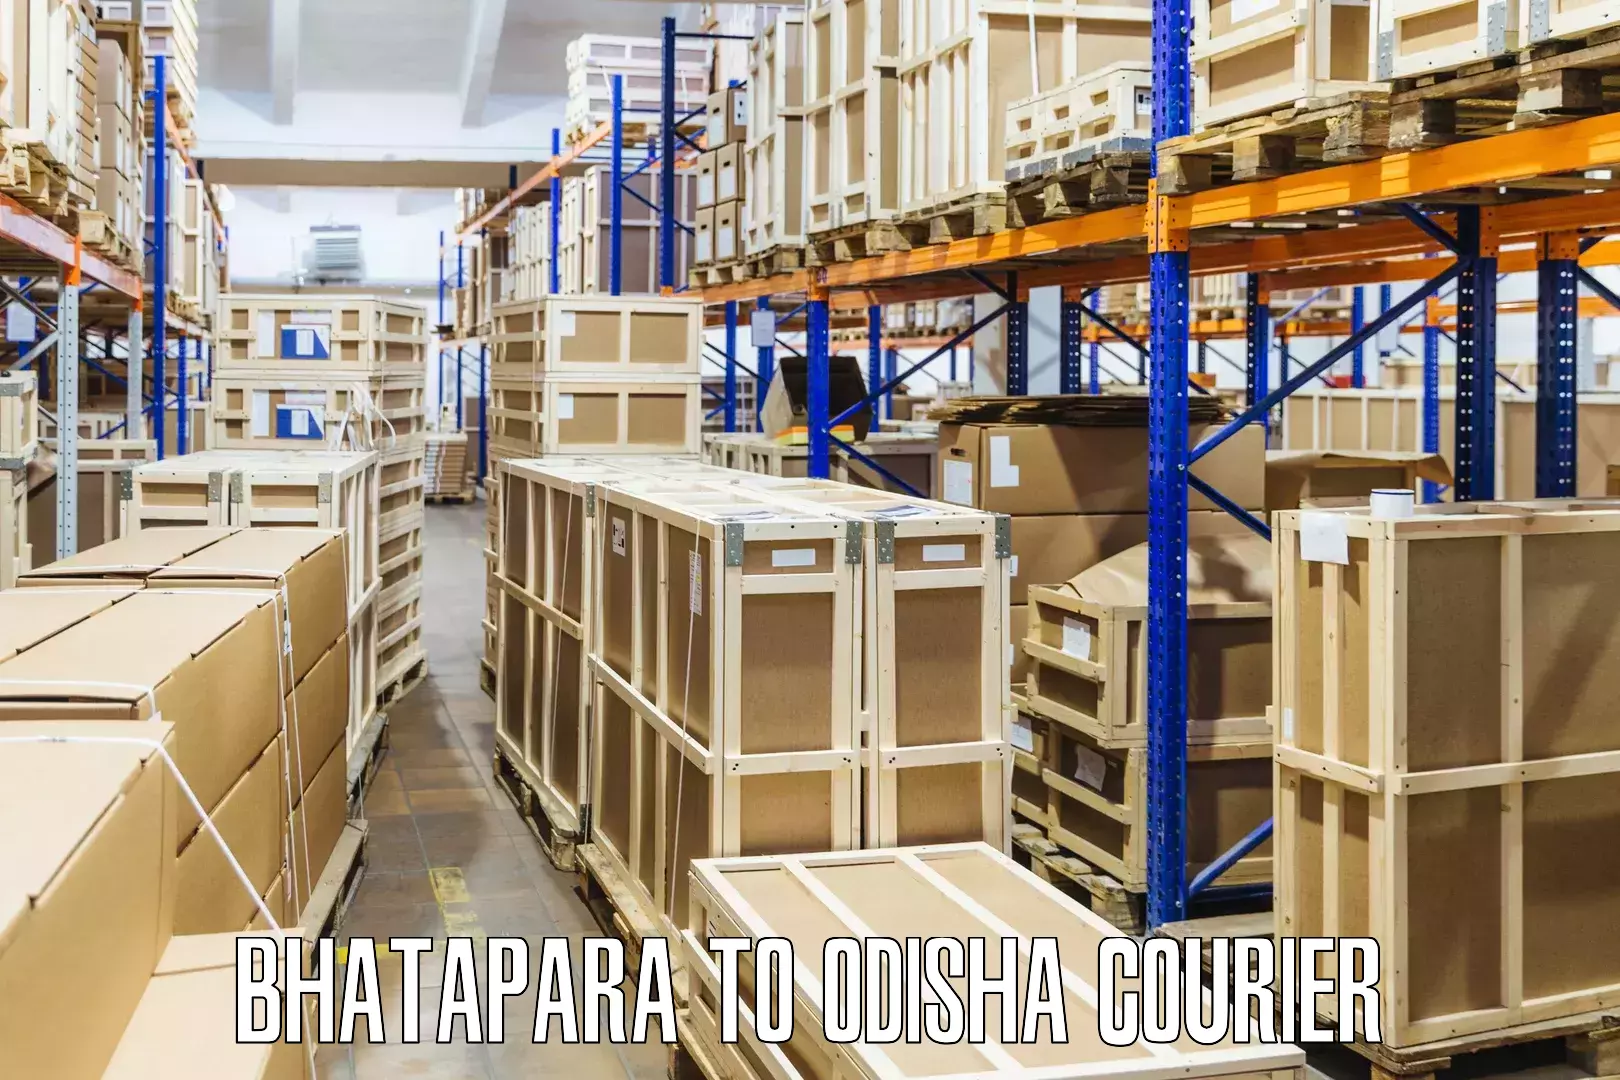 Quality courier partnerships Bhatapara to Bamra